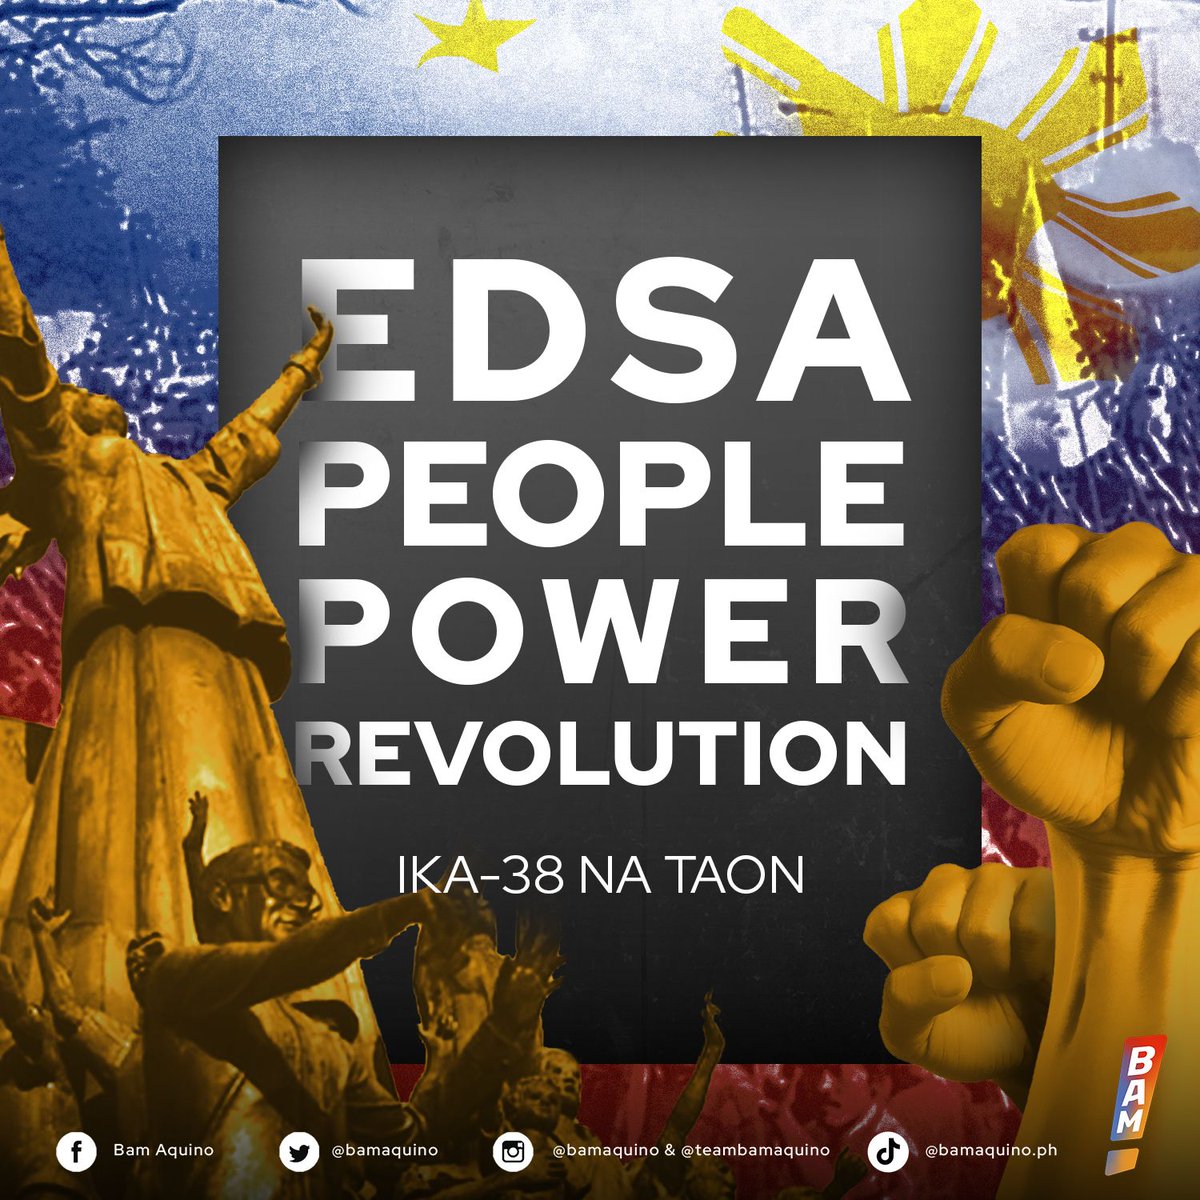 Naniniwala akong malalim ang pananampalataya at pagmamahal natin sa bayan mula noon hanggang ngayon. Isang mapayapang paggunita ng ika-38 na Anibersaryo ng EDSA People Power Revolution. #EDSA38